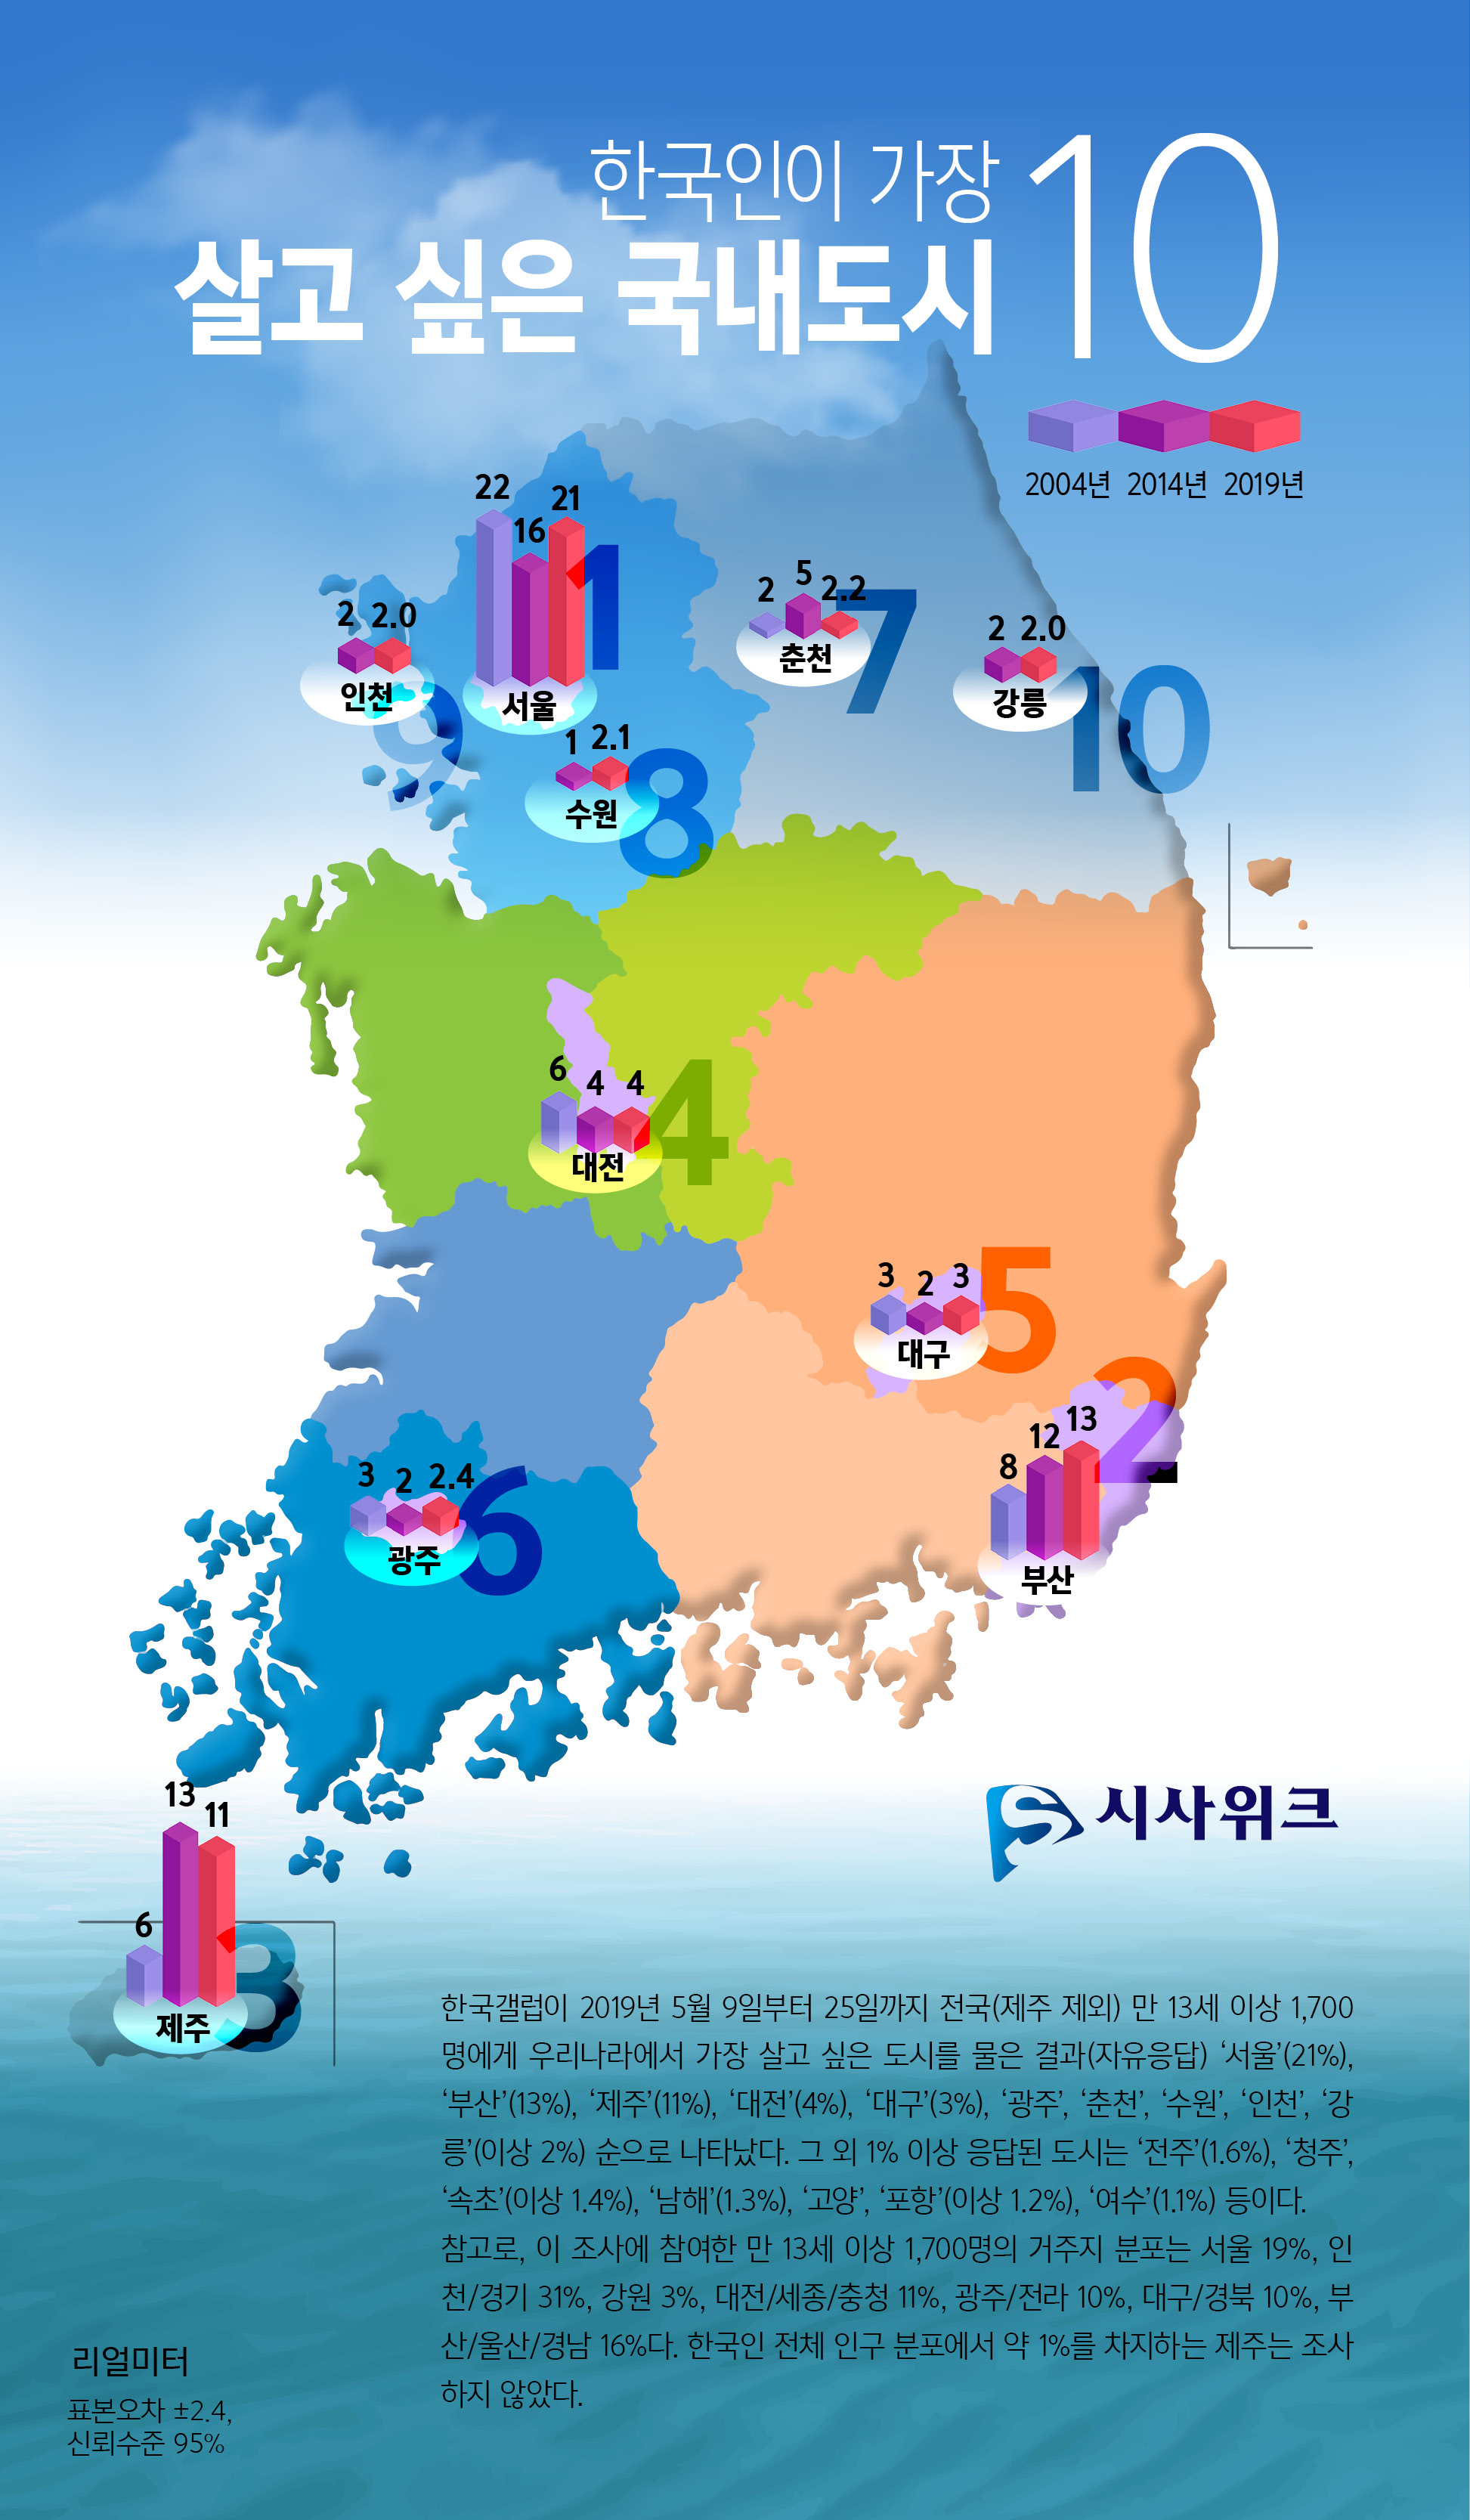 우리나라에서 가장 살기 좋은 도시는 어디일까. 한국갤럽 조사 결과에 따르면, 서울이 21%로 1위였고 그 다음은 부산(13%)이었다. 제주(11%), 대전(4%), 대구(3%), 광주, 춘천, 수원, 인천, 강릉(이상 2%) 순으로 조사됐다. 지난 5월 9~25일 전국(제주 제외) 만 13세 이상 남녀 1,700명 대상. 표본오차 95% 신뢰수준에서 ±2.4%포인트. /그래픽=김상석 기자